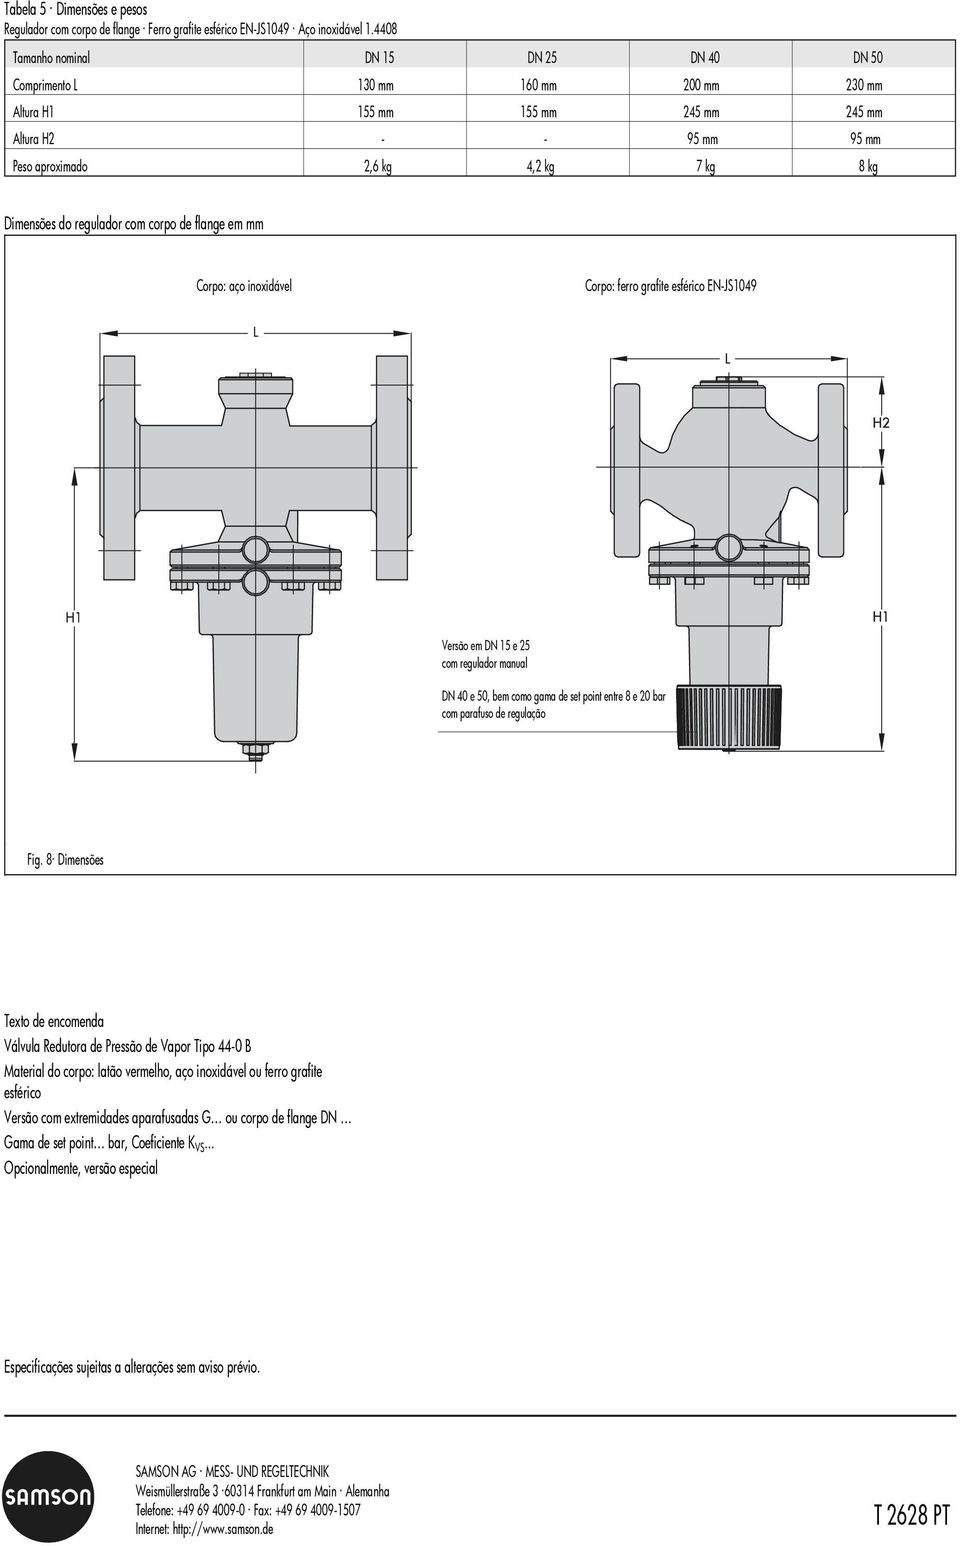 Dimensões do regulador com corpo de flange em mm Corpo: aço inoxidável Corpo: ferro grafite esférico EN-JS1049 Versão em DN 15 e 25 com regulador manual DN 40 e 50, bem como gama de set point entre 8